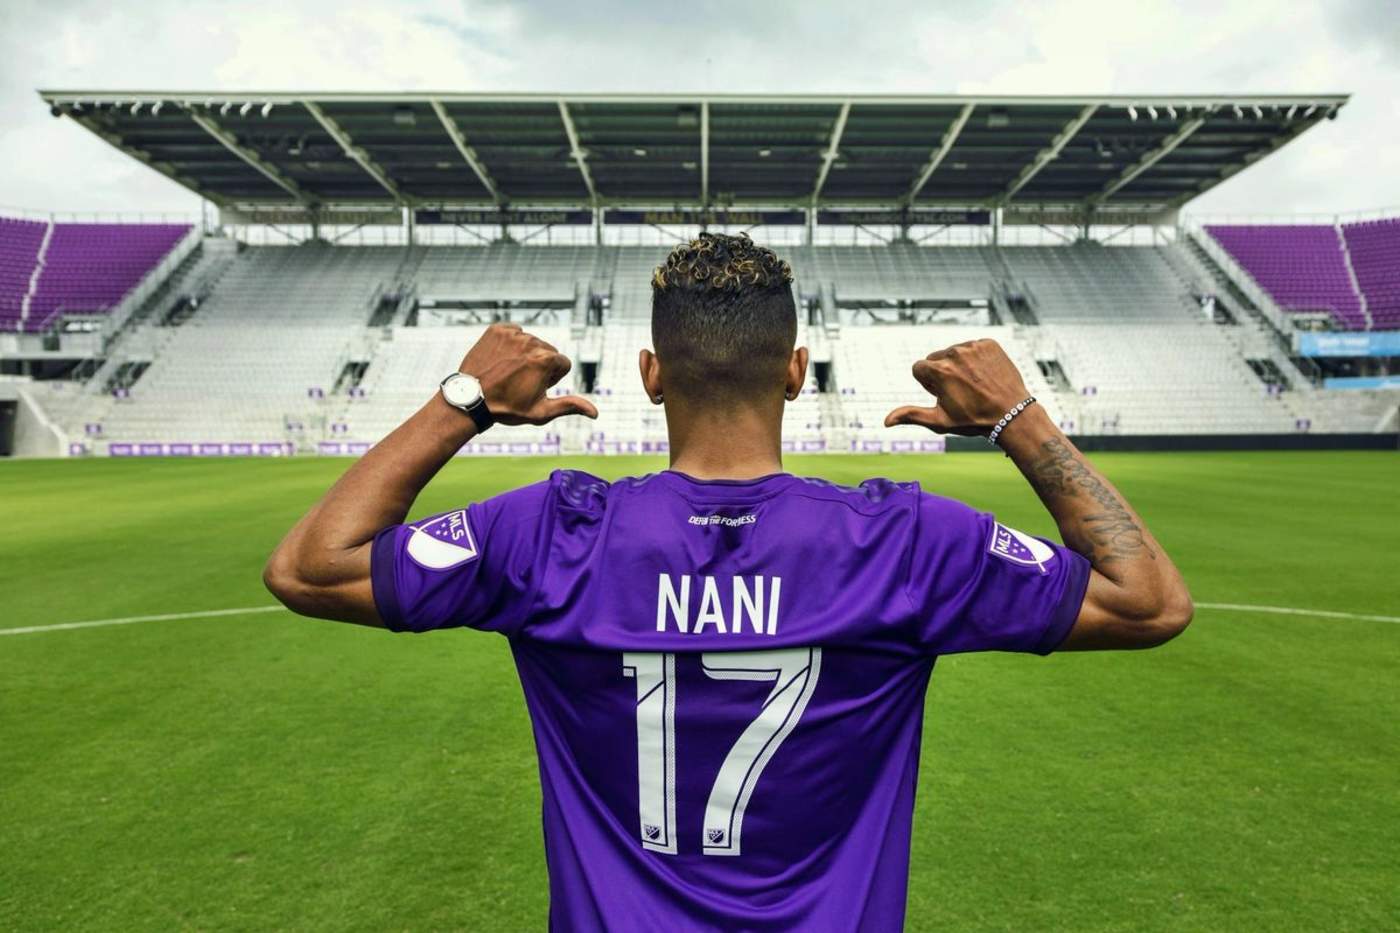 Nani se convirtió ayer en una estrella más en llegar a la MLS después de una exitosa carrera en Europa. (Especial)